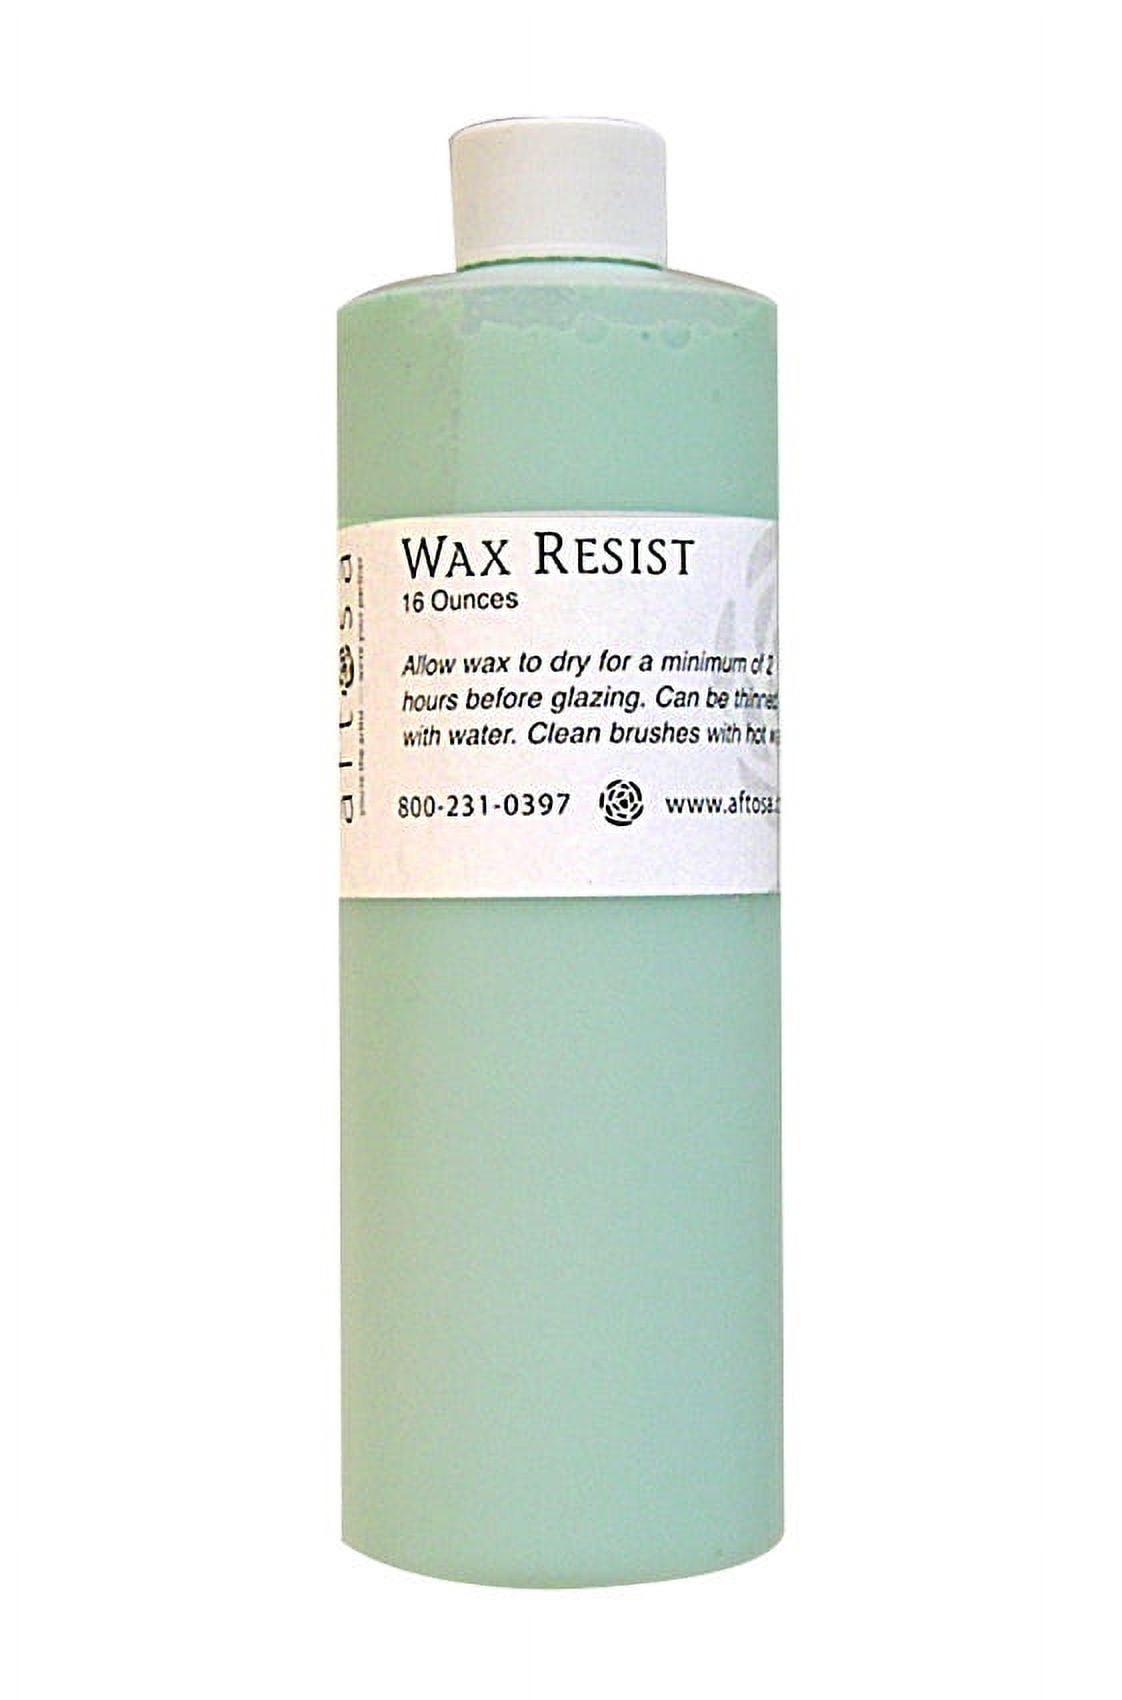 Aftosa Green Wax Resist